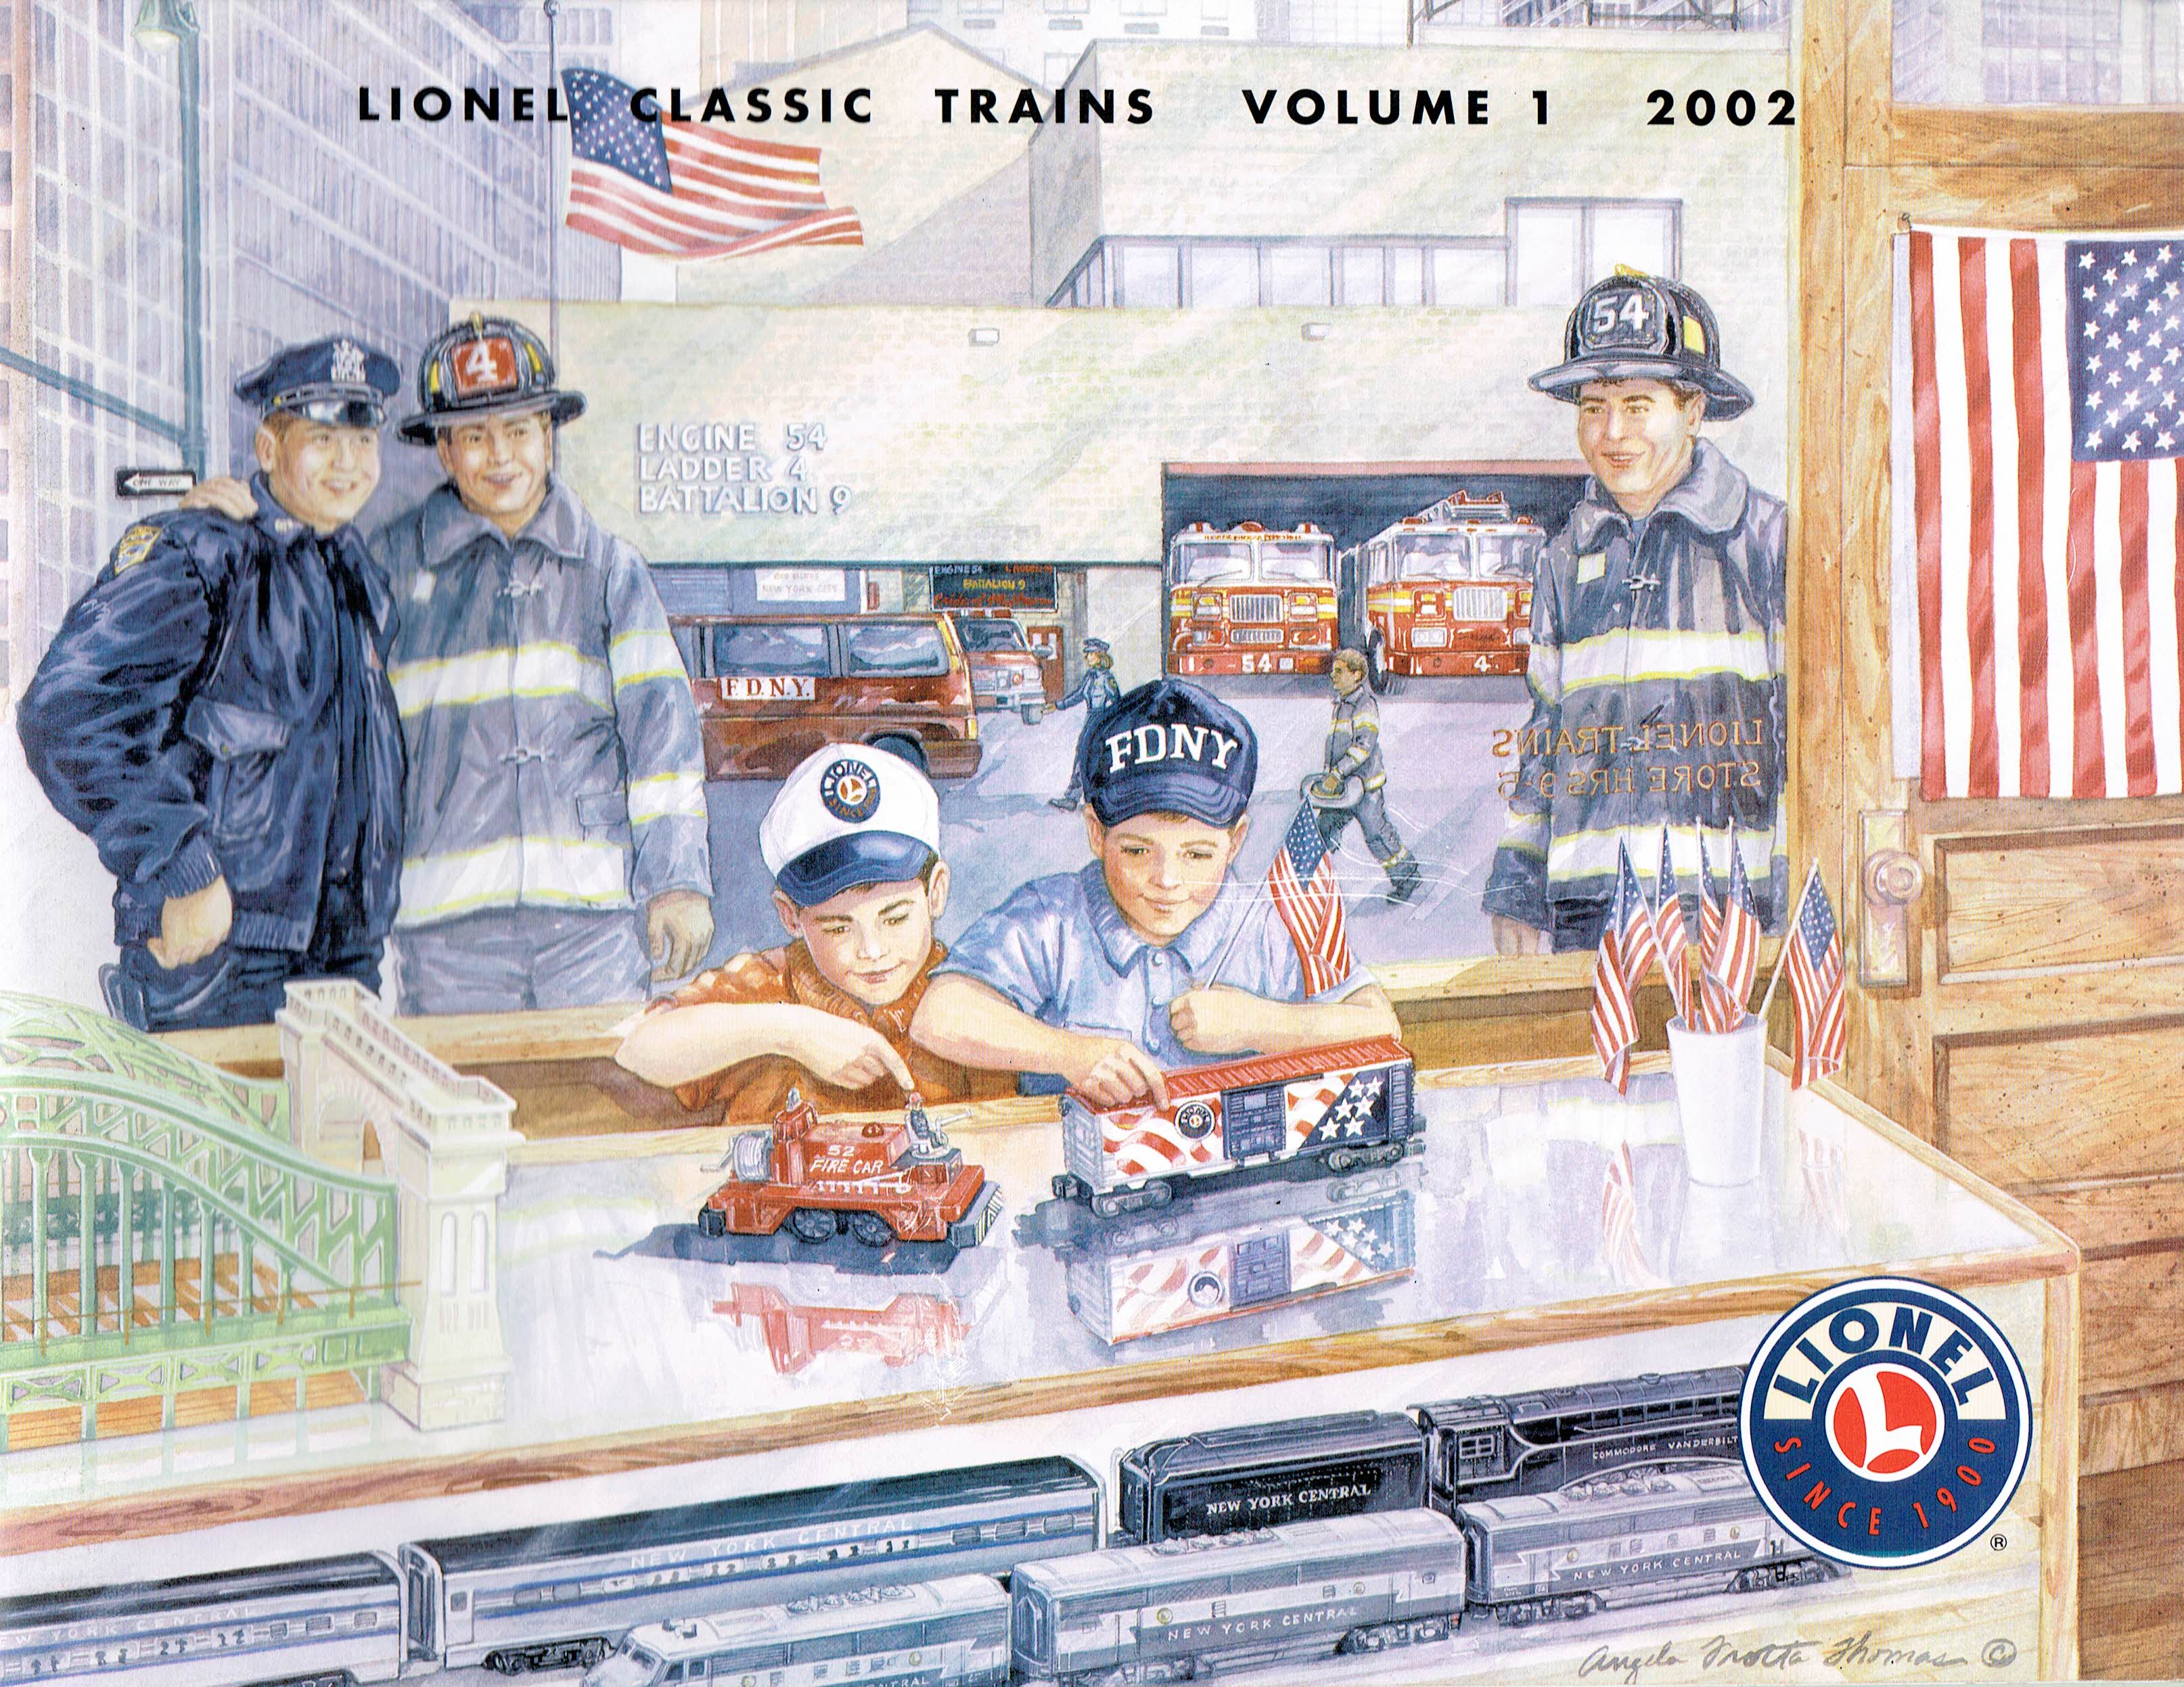 Lionel 2002 Classic Trains Volume 1 Catalog image